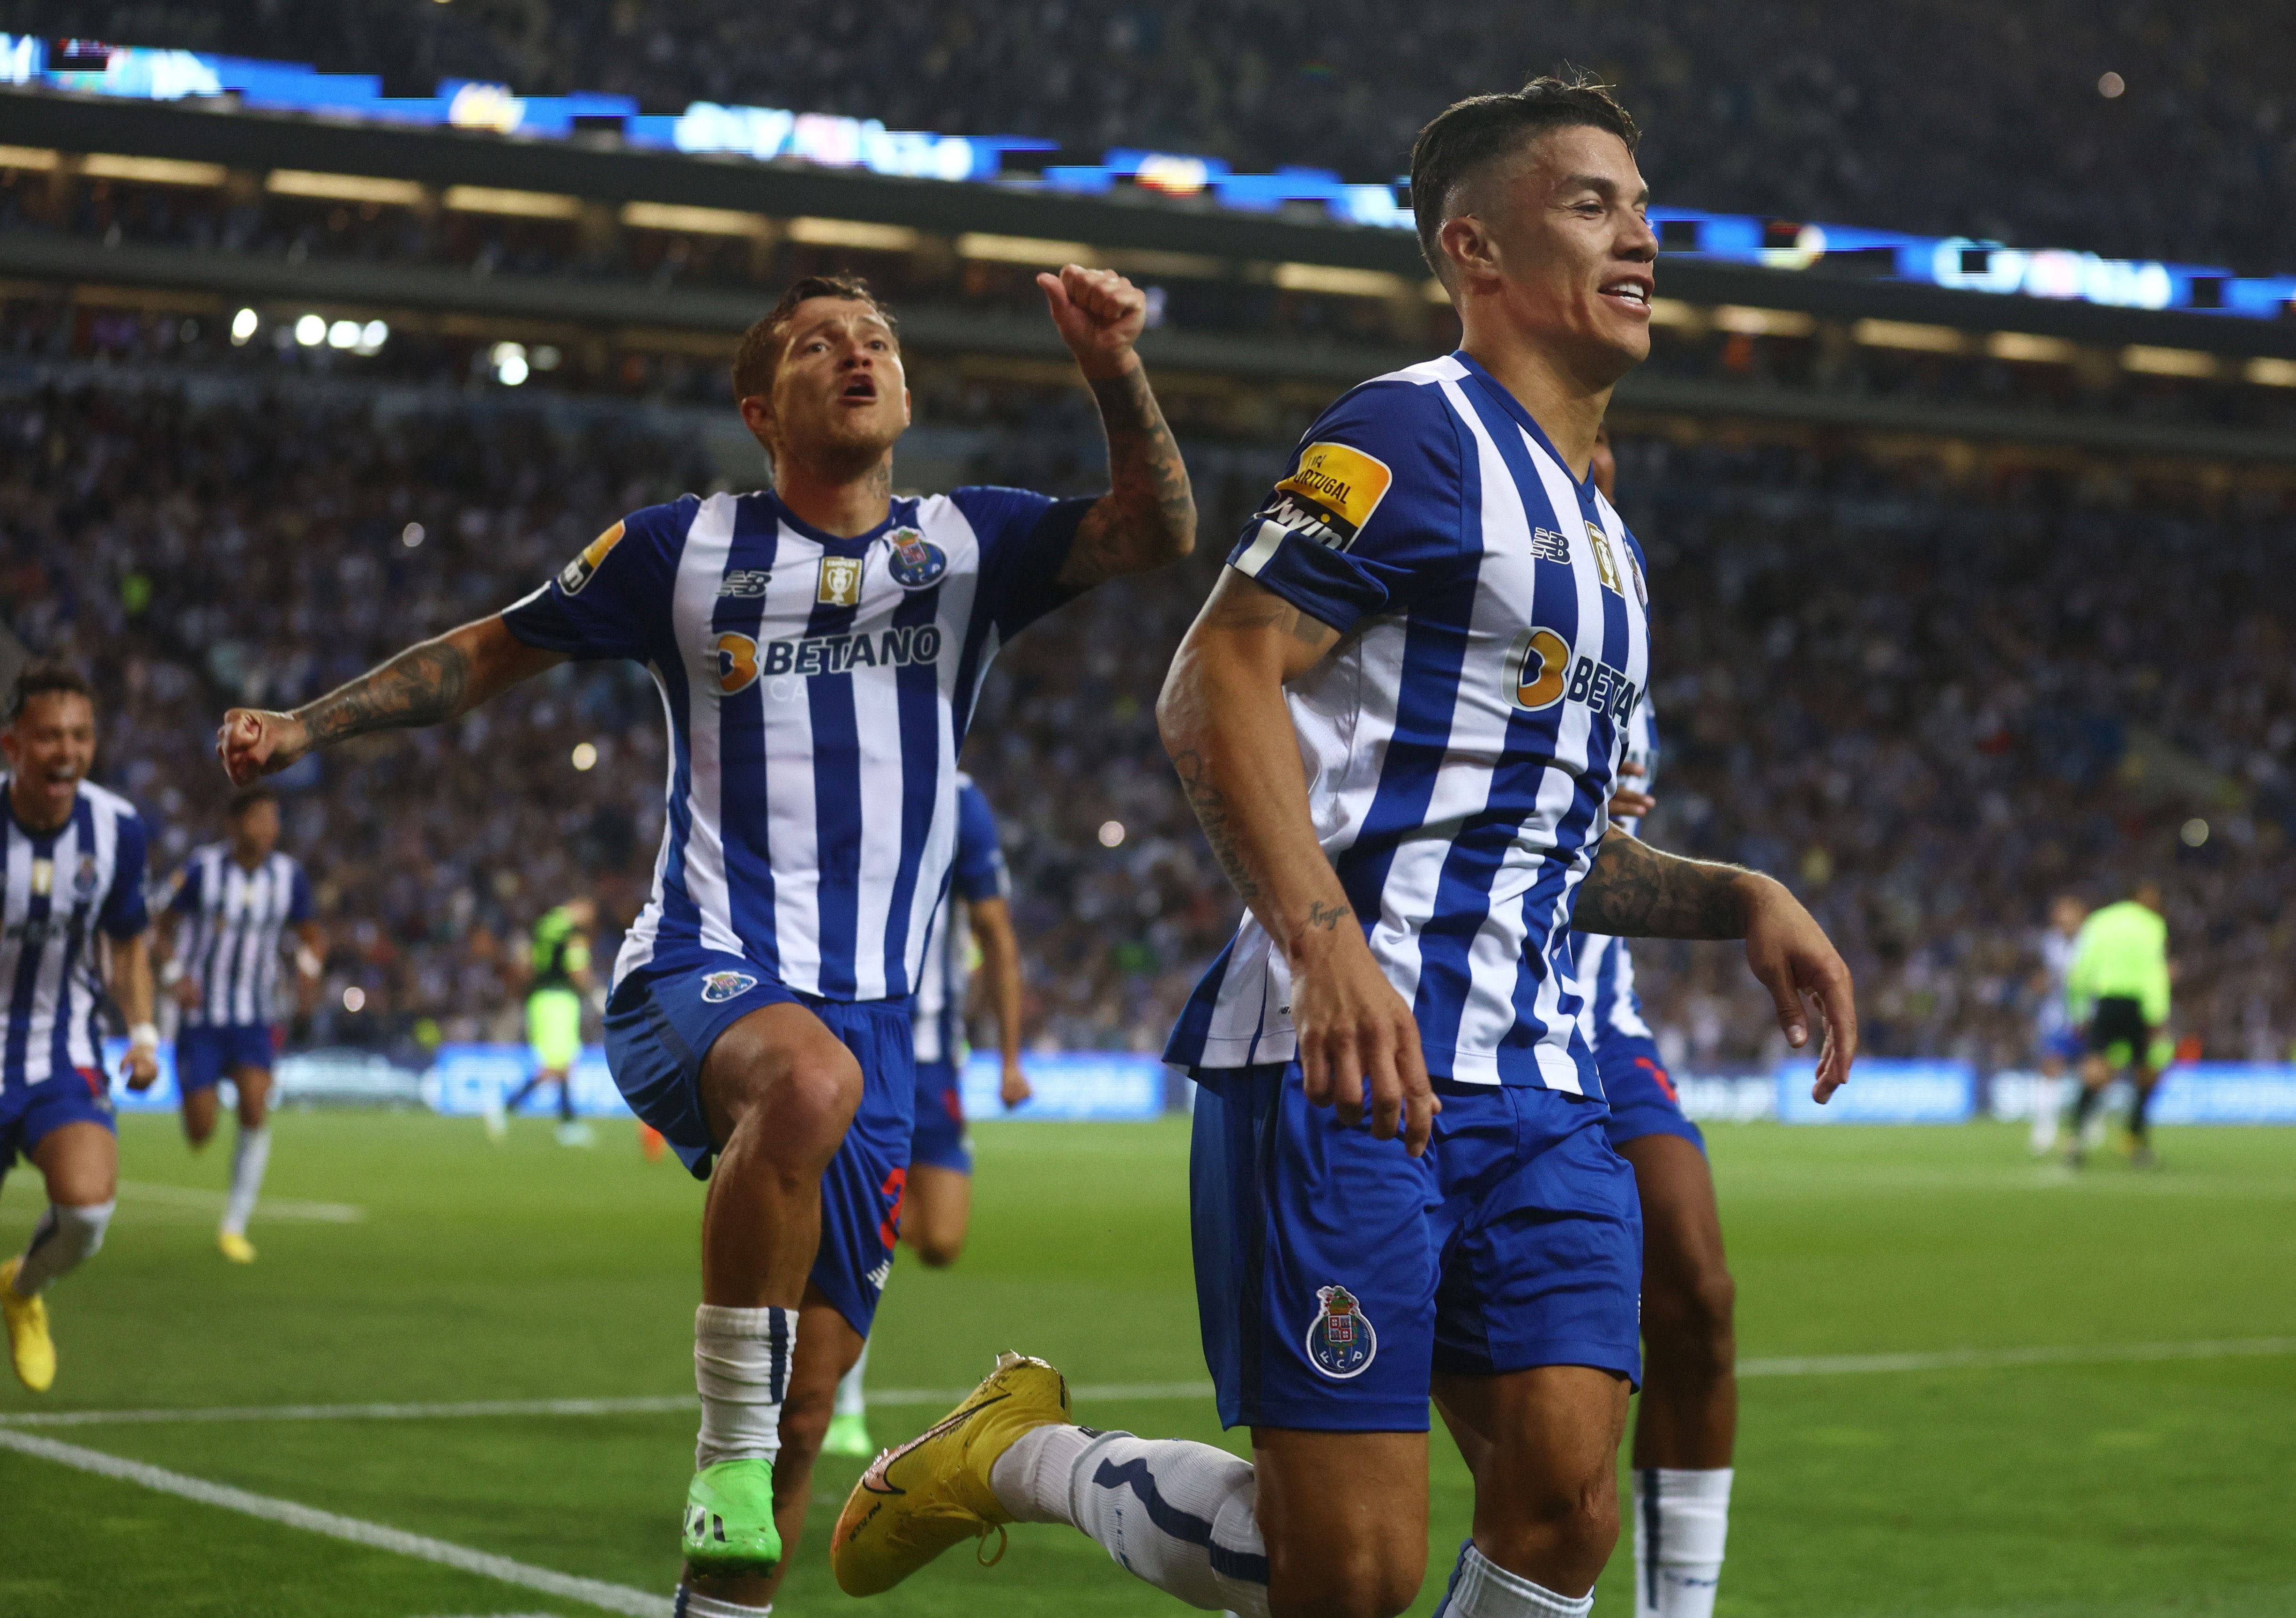 La renovación del jugador se convirtió en una prioridad para los directivos de Porto. Foto: REUTERS/Pedro Nunes